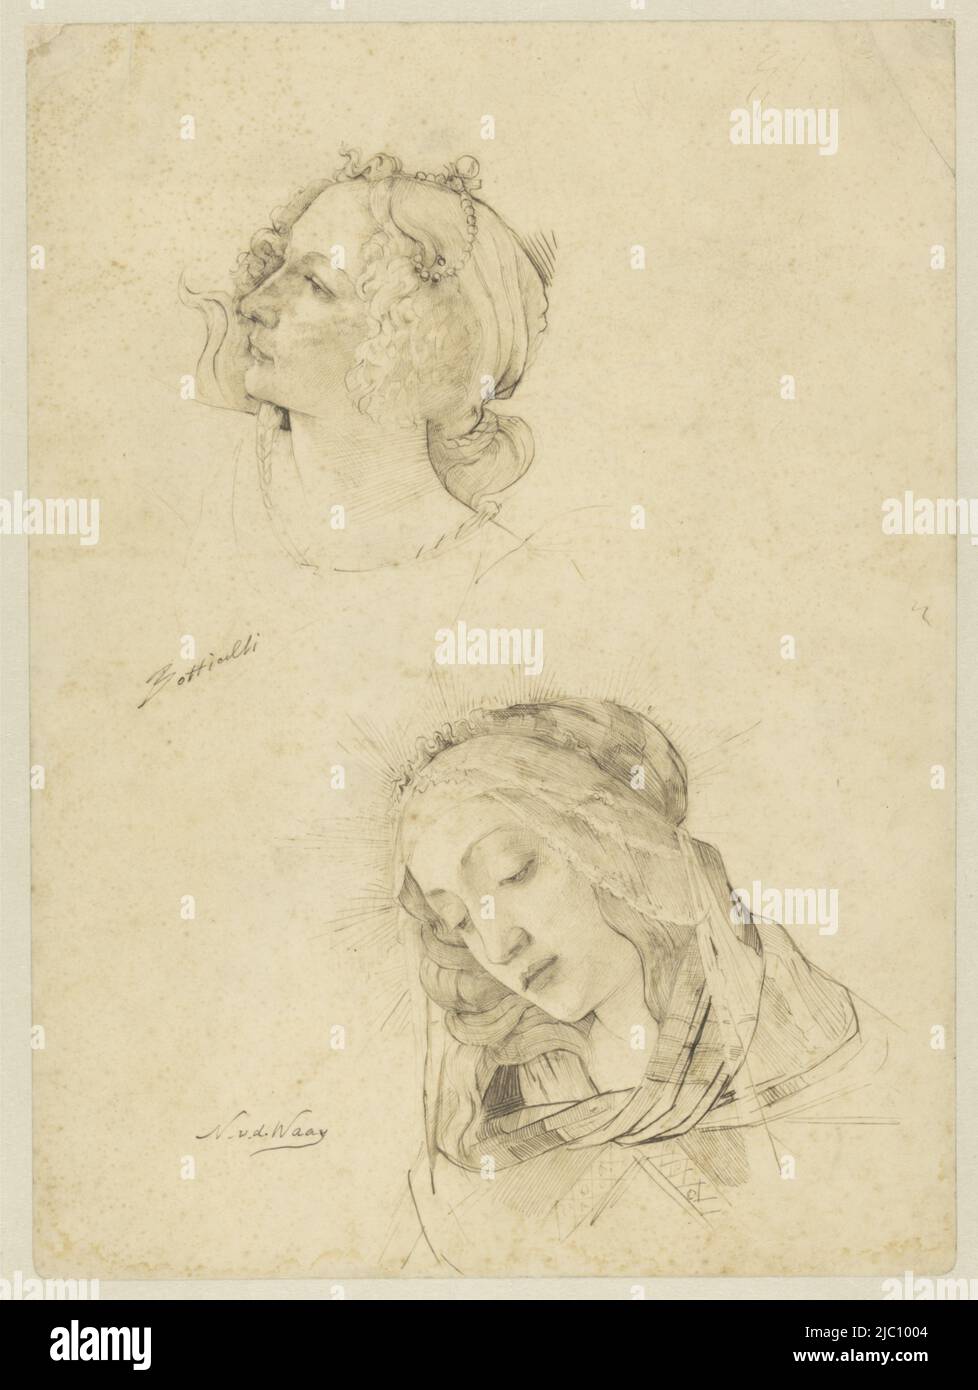 Botticelli figure de la Primavera et d'une Madonna, dessinateur: Nicolaas van der Waay, Sandro Botticelli, 1865 - 1936, papier, stylo, h 332 mm × l 249 mm Banque D'Images